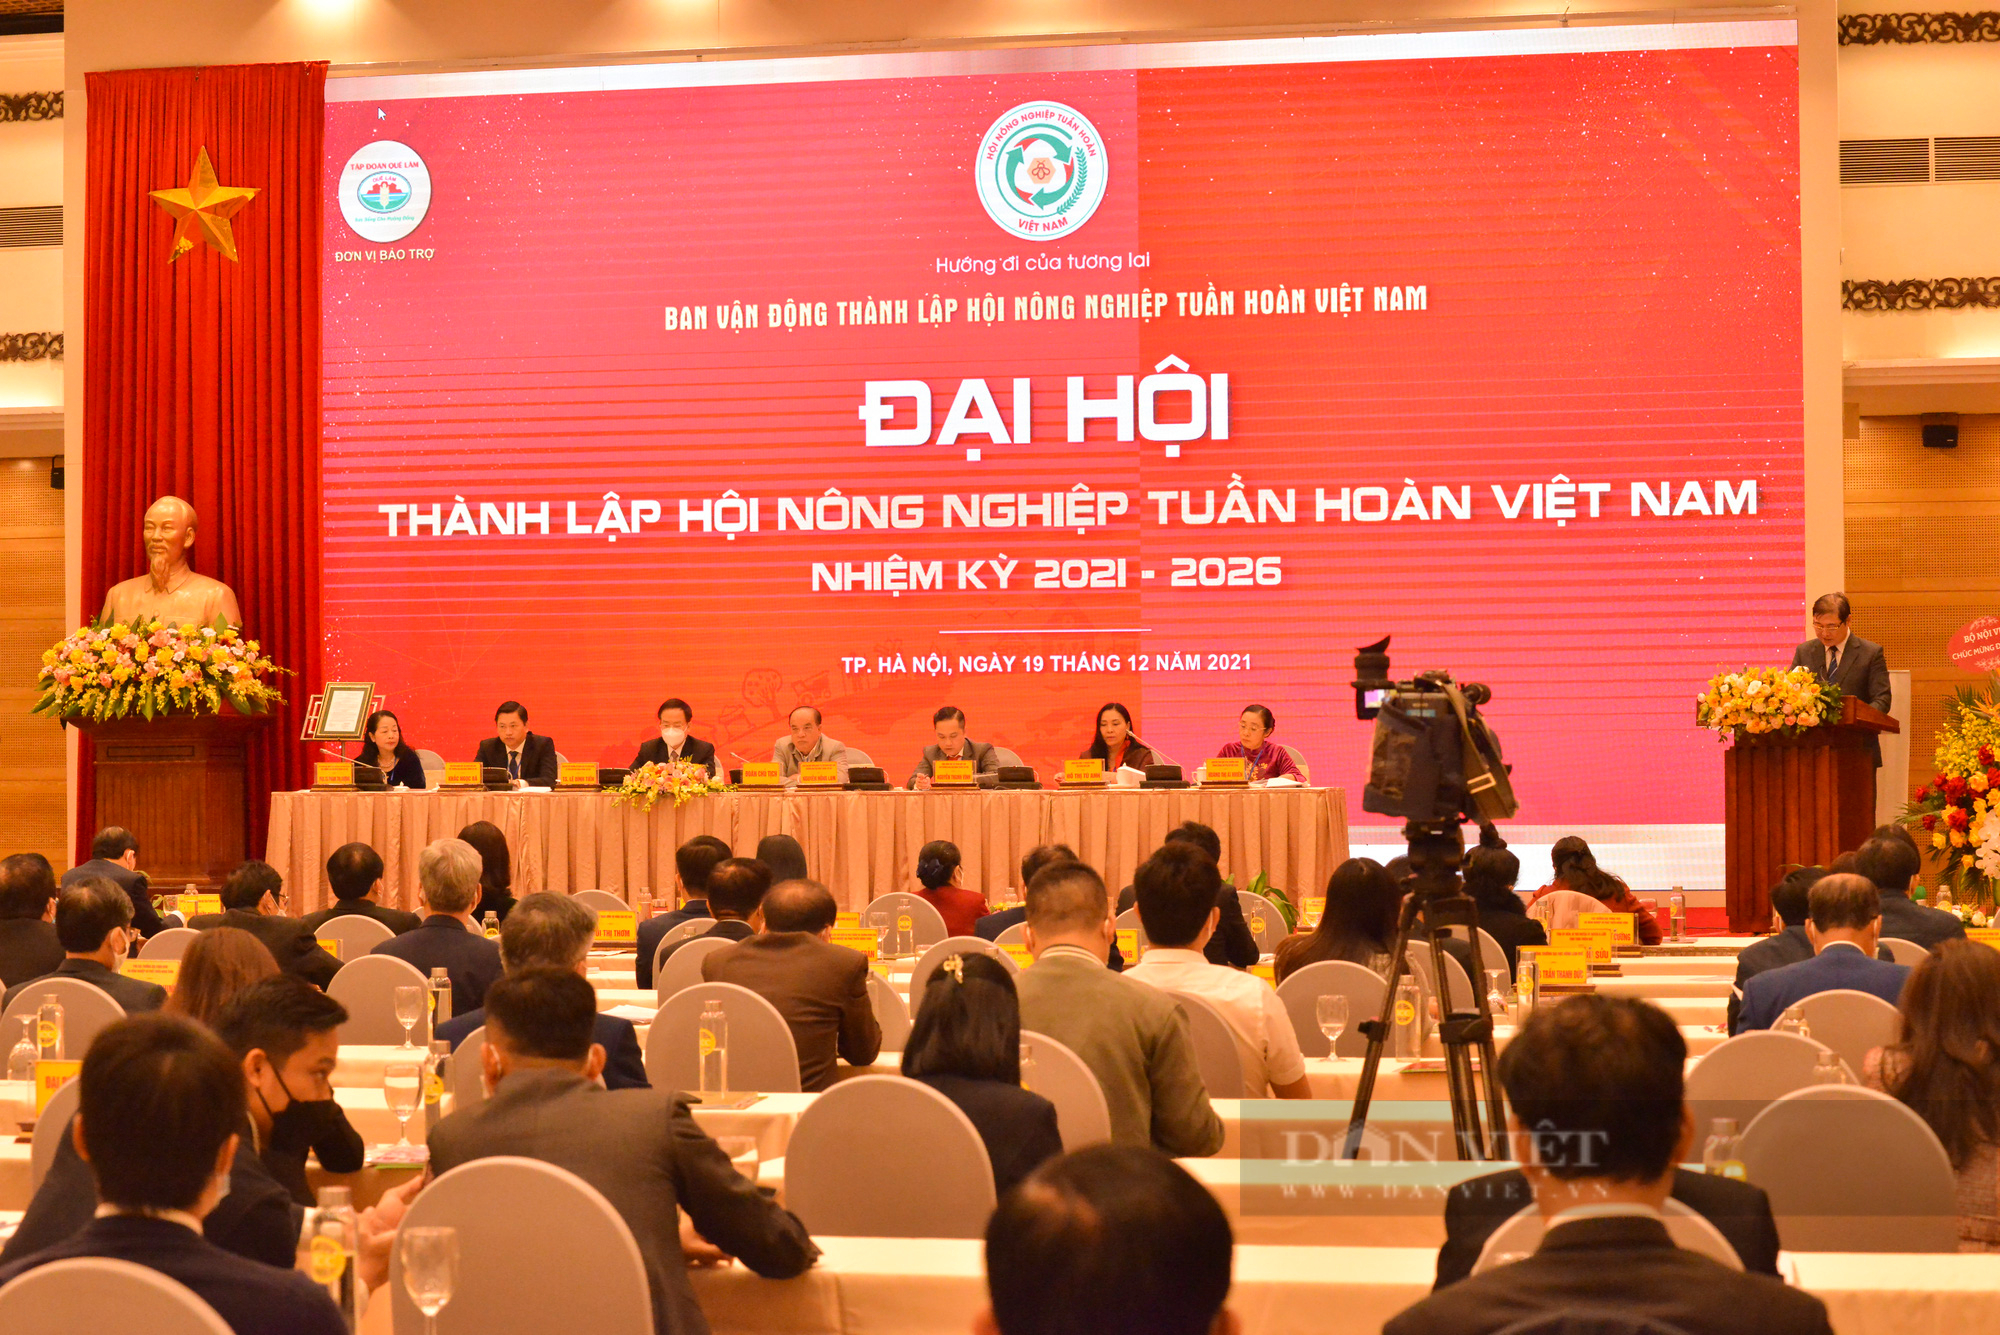 Ông Nguyễn Hồng Lam được bầu làm Chủ tịch Hội Nông nghiệp tuần hoàn Việt Nam - Ảnh 2.